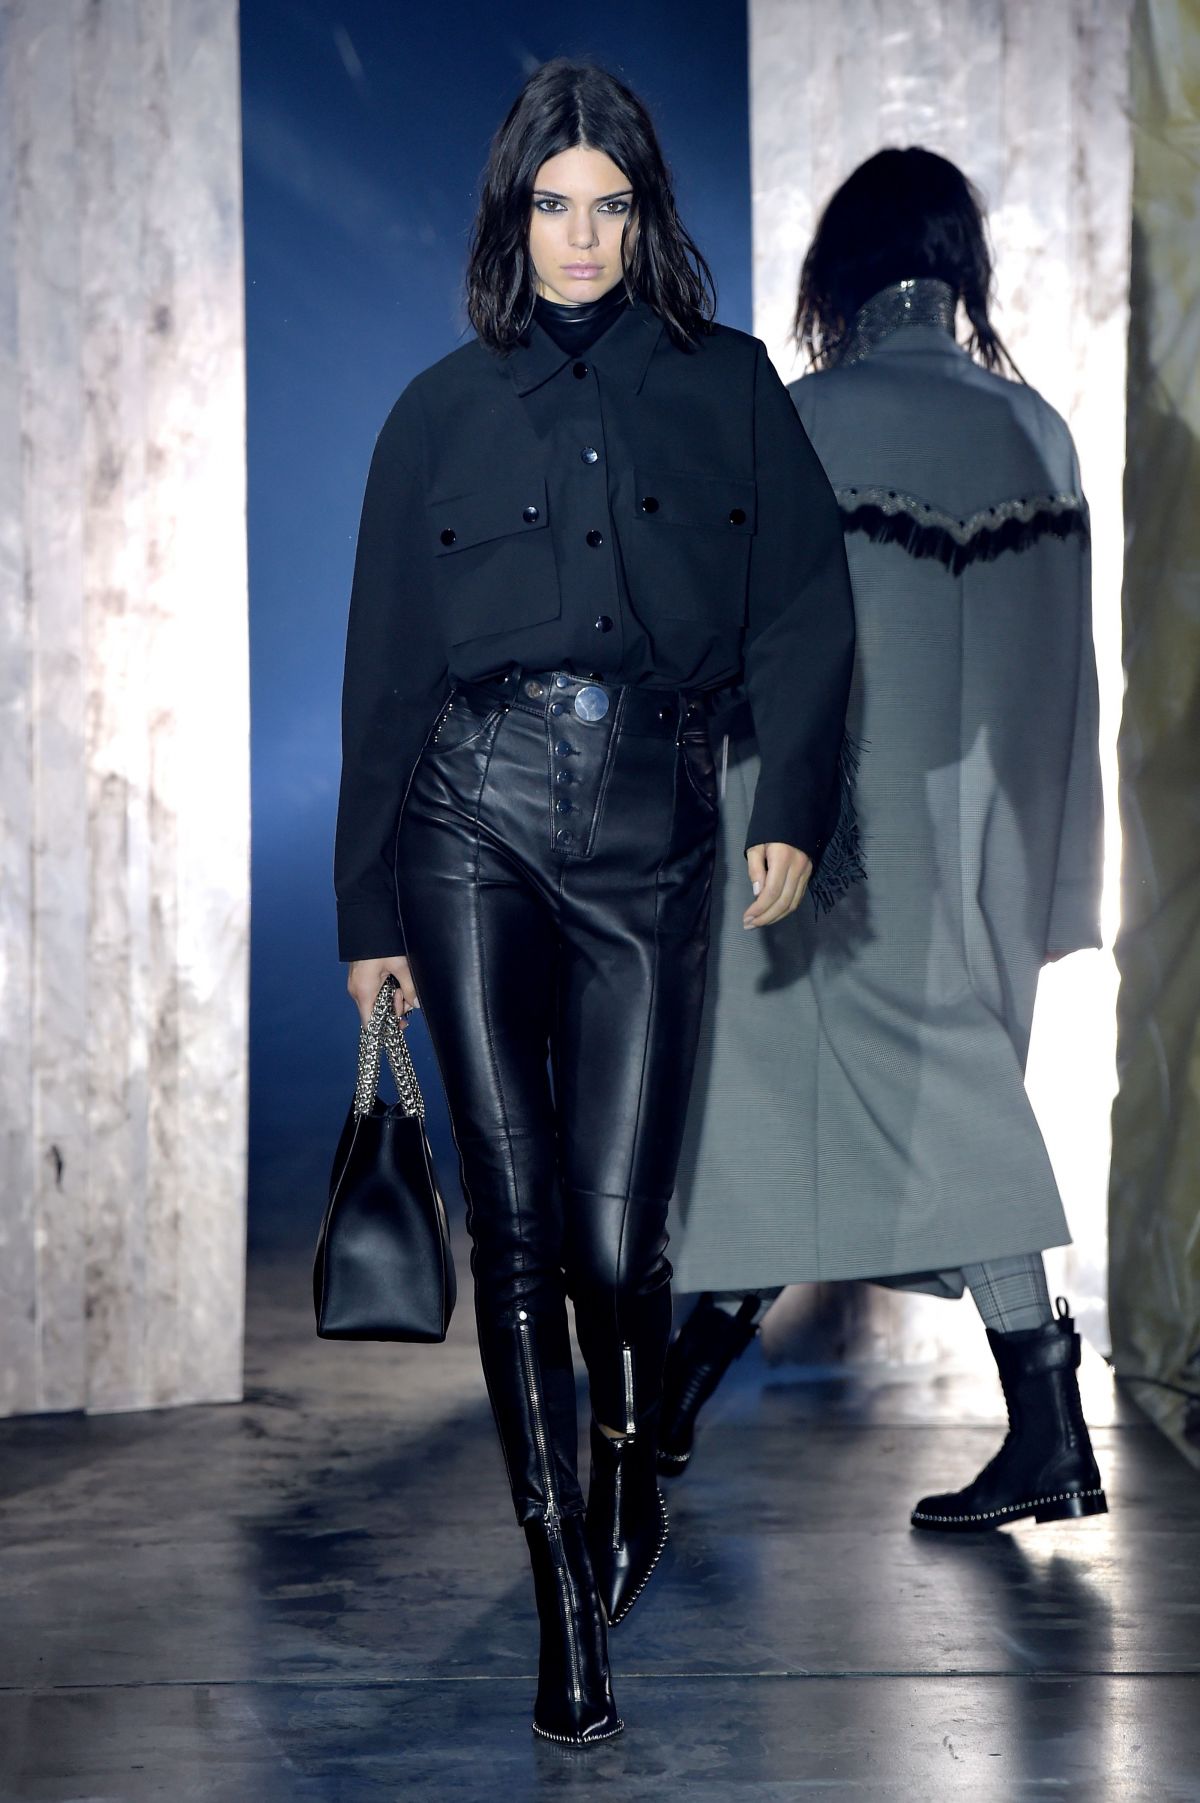 KENDALL JENNER at Alexander Wang Fashion Show at New York Fashion Week ...